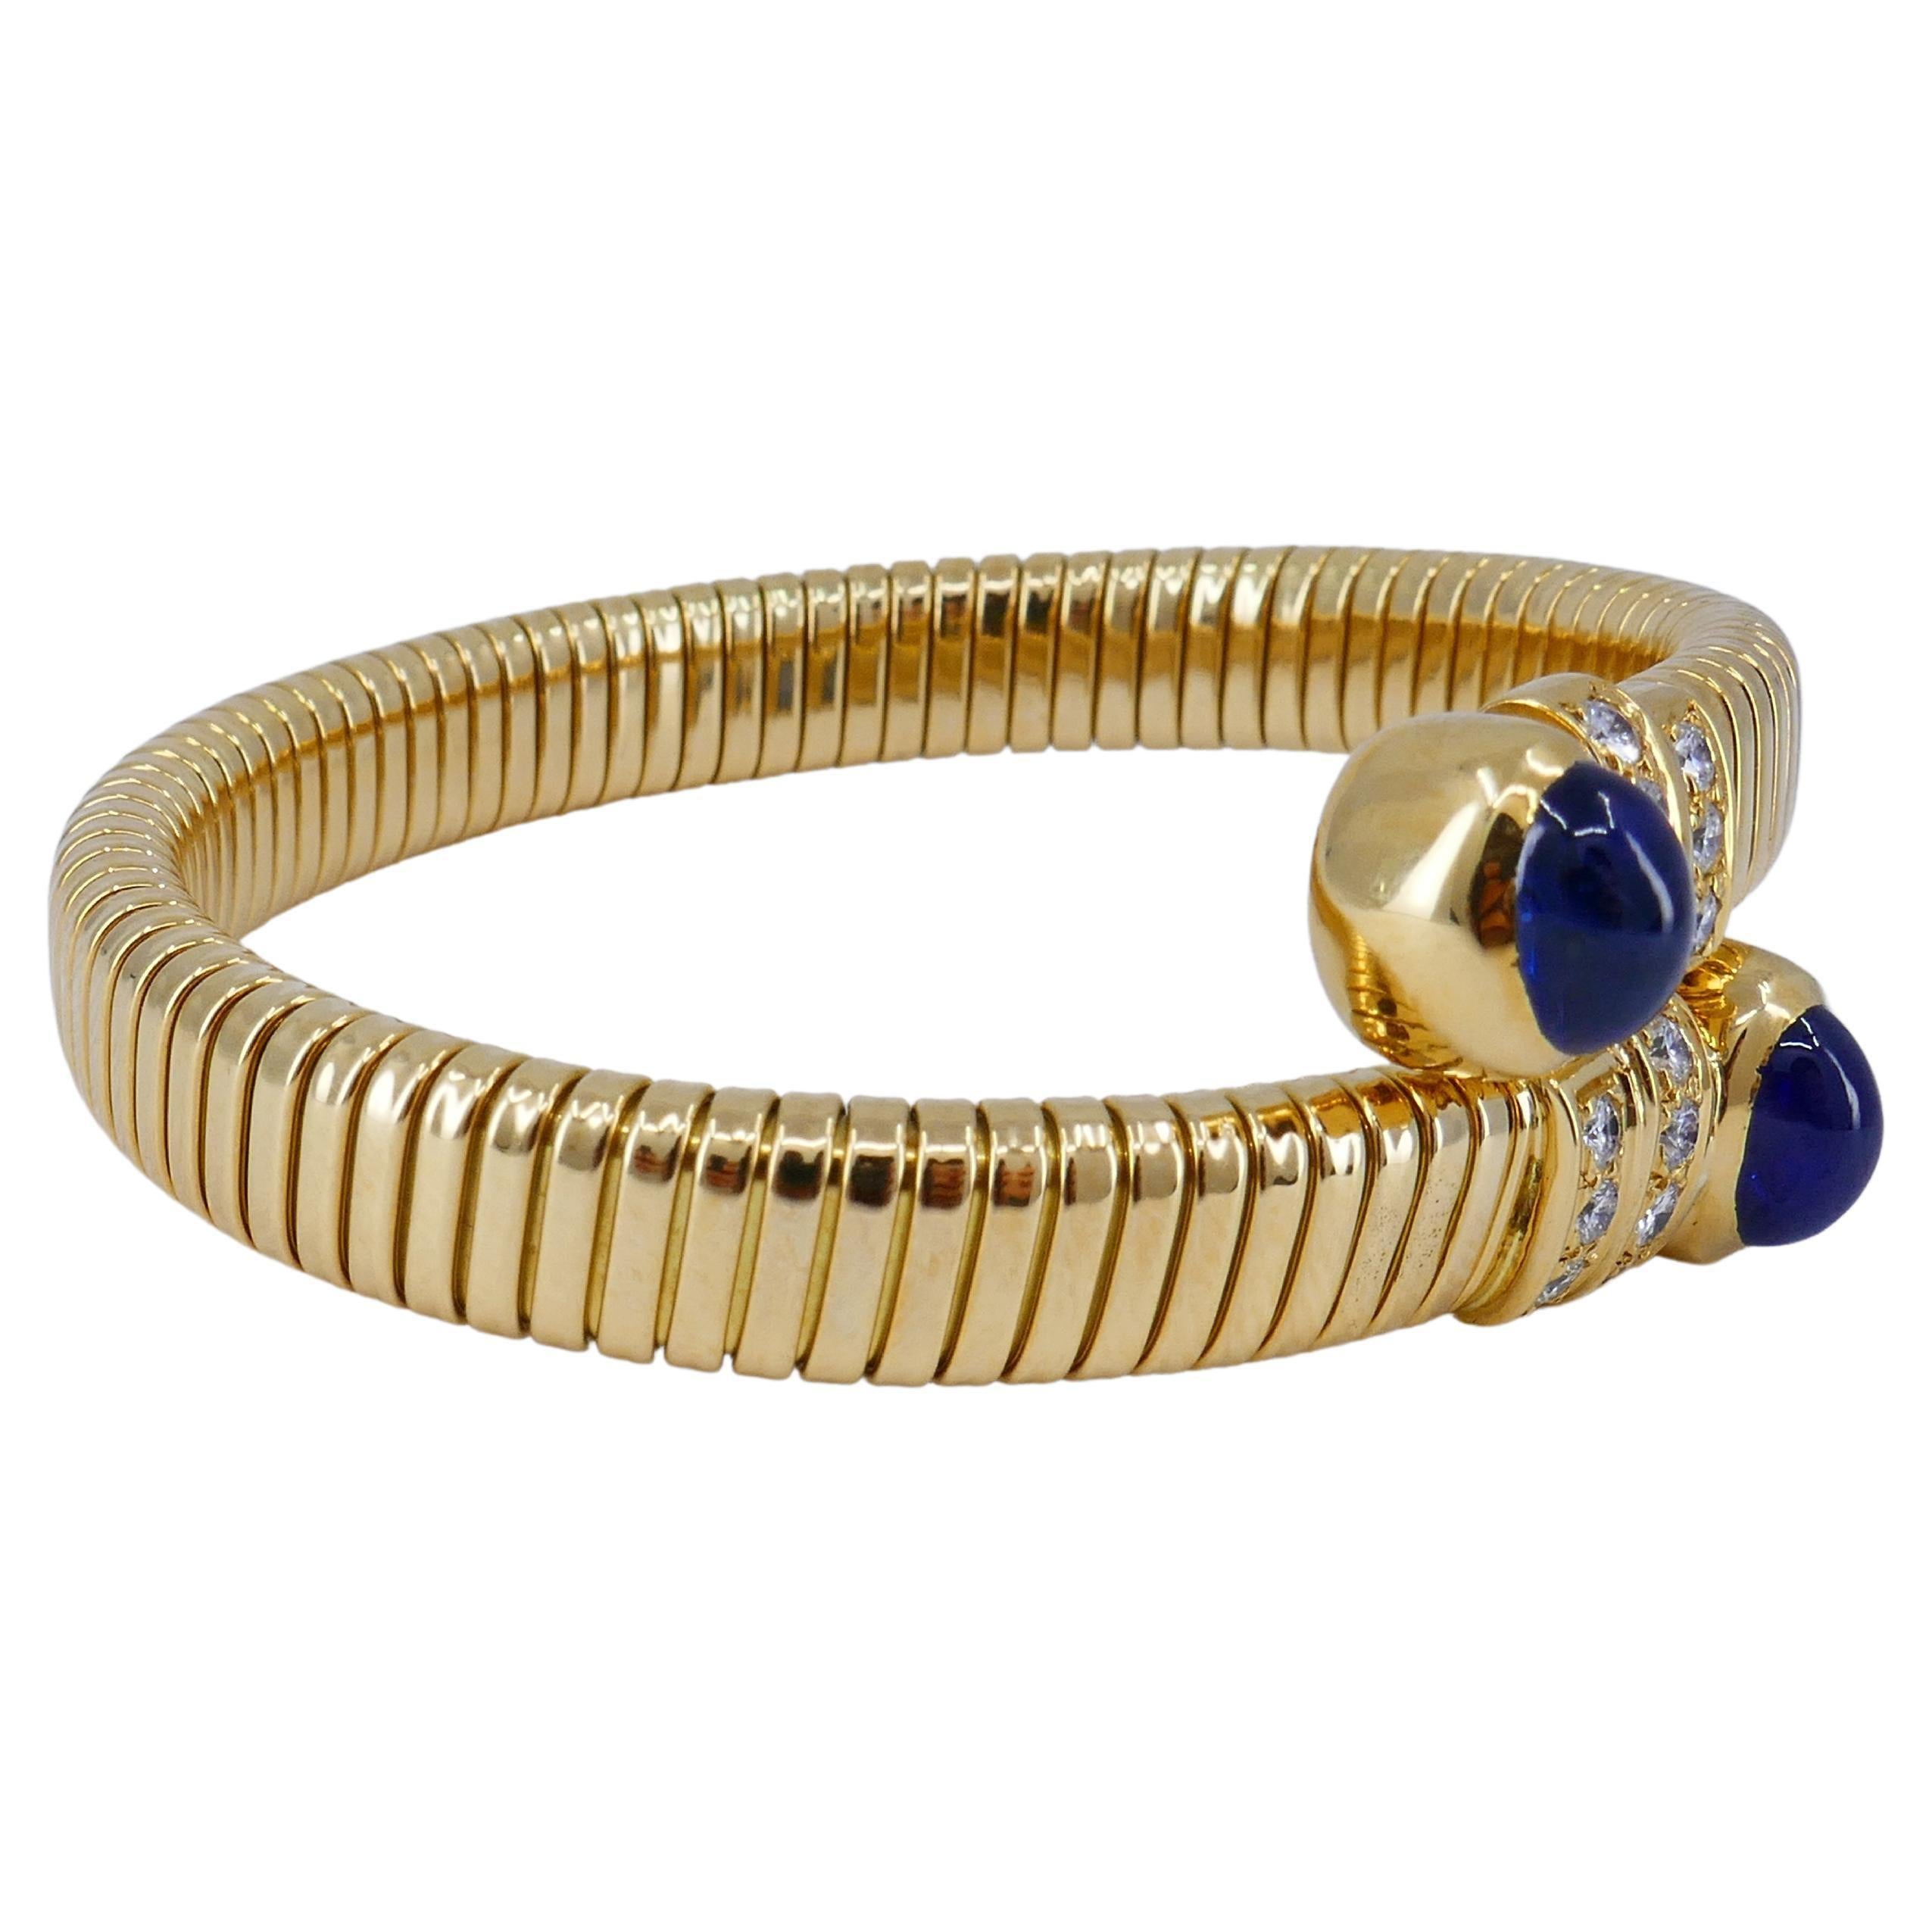 Un bracelet tubogas en or 18k d'Adler Geneve, avec saphirs cabochons et diamant.
Les diamants sont de taille brillant, sertis en canal. Les pierres sont disposées en deux rangées horizontales. Le bracelet est conçu comme un tubogas enveloppant, une